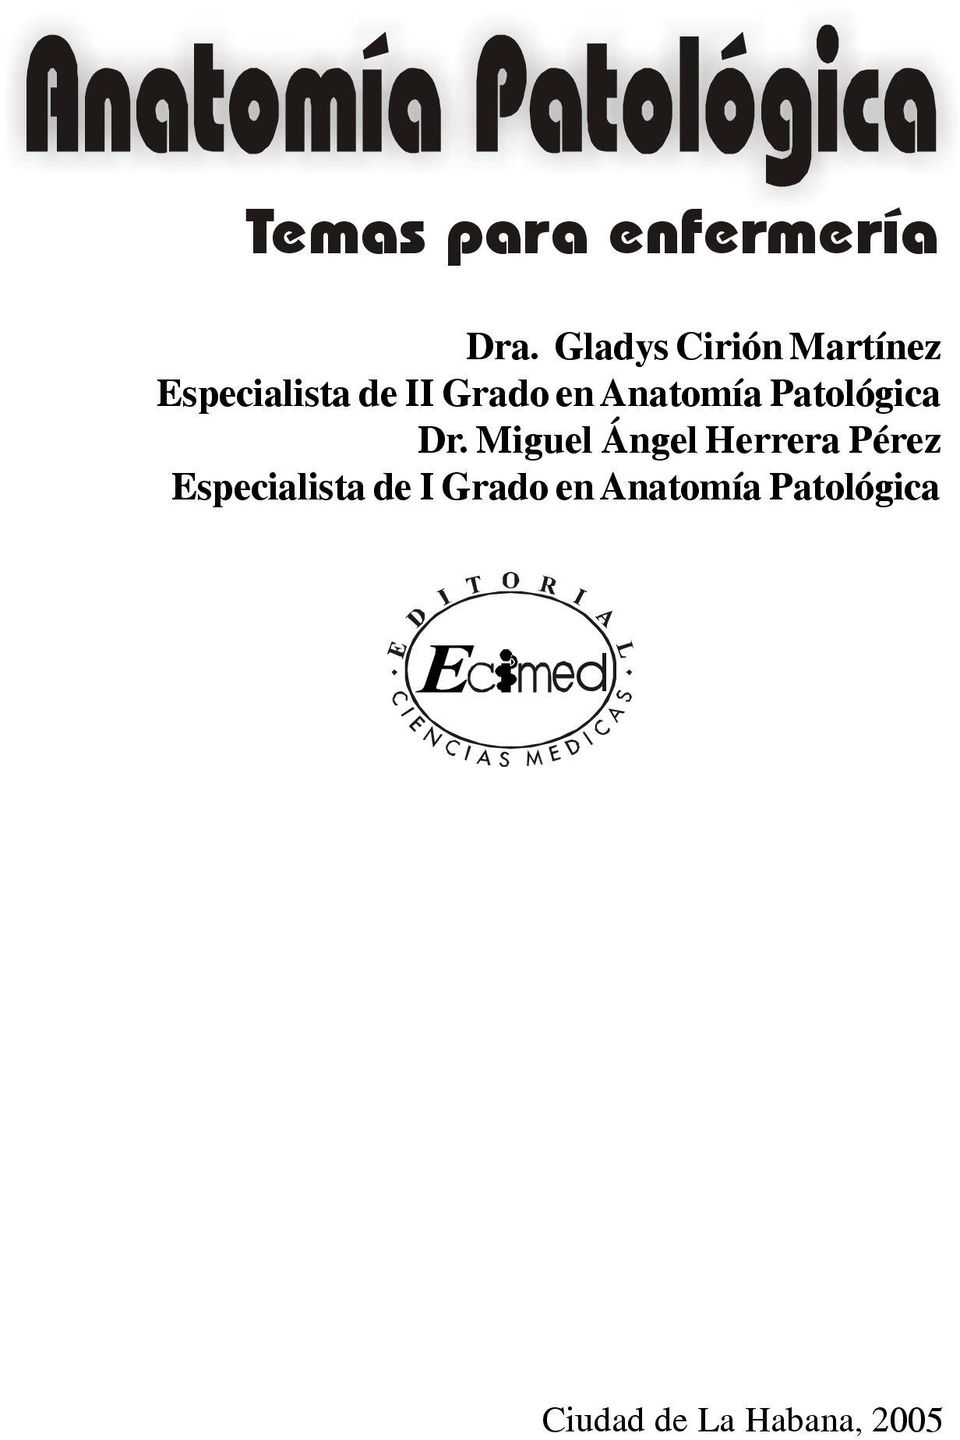 Gladys Cirión Martínez Especialista de II Grado en Anatomía